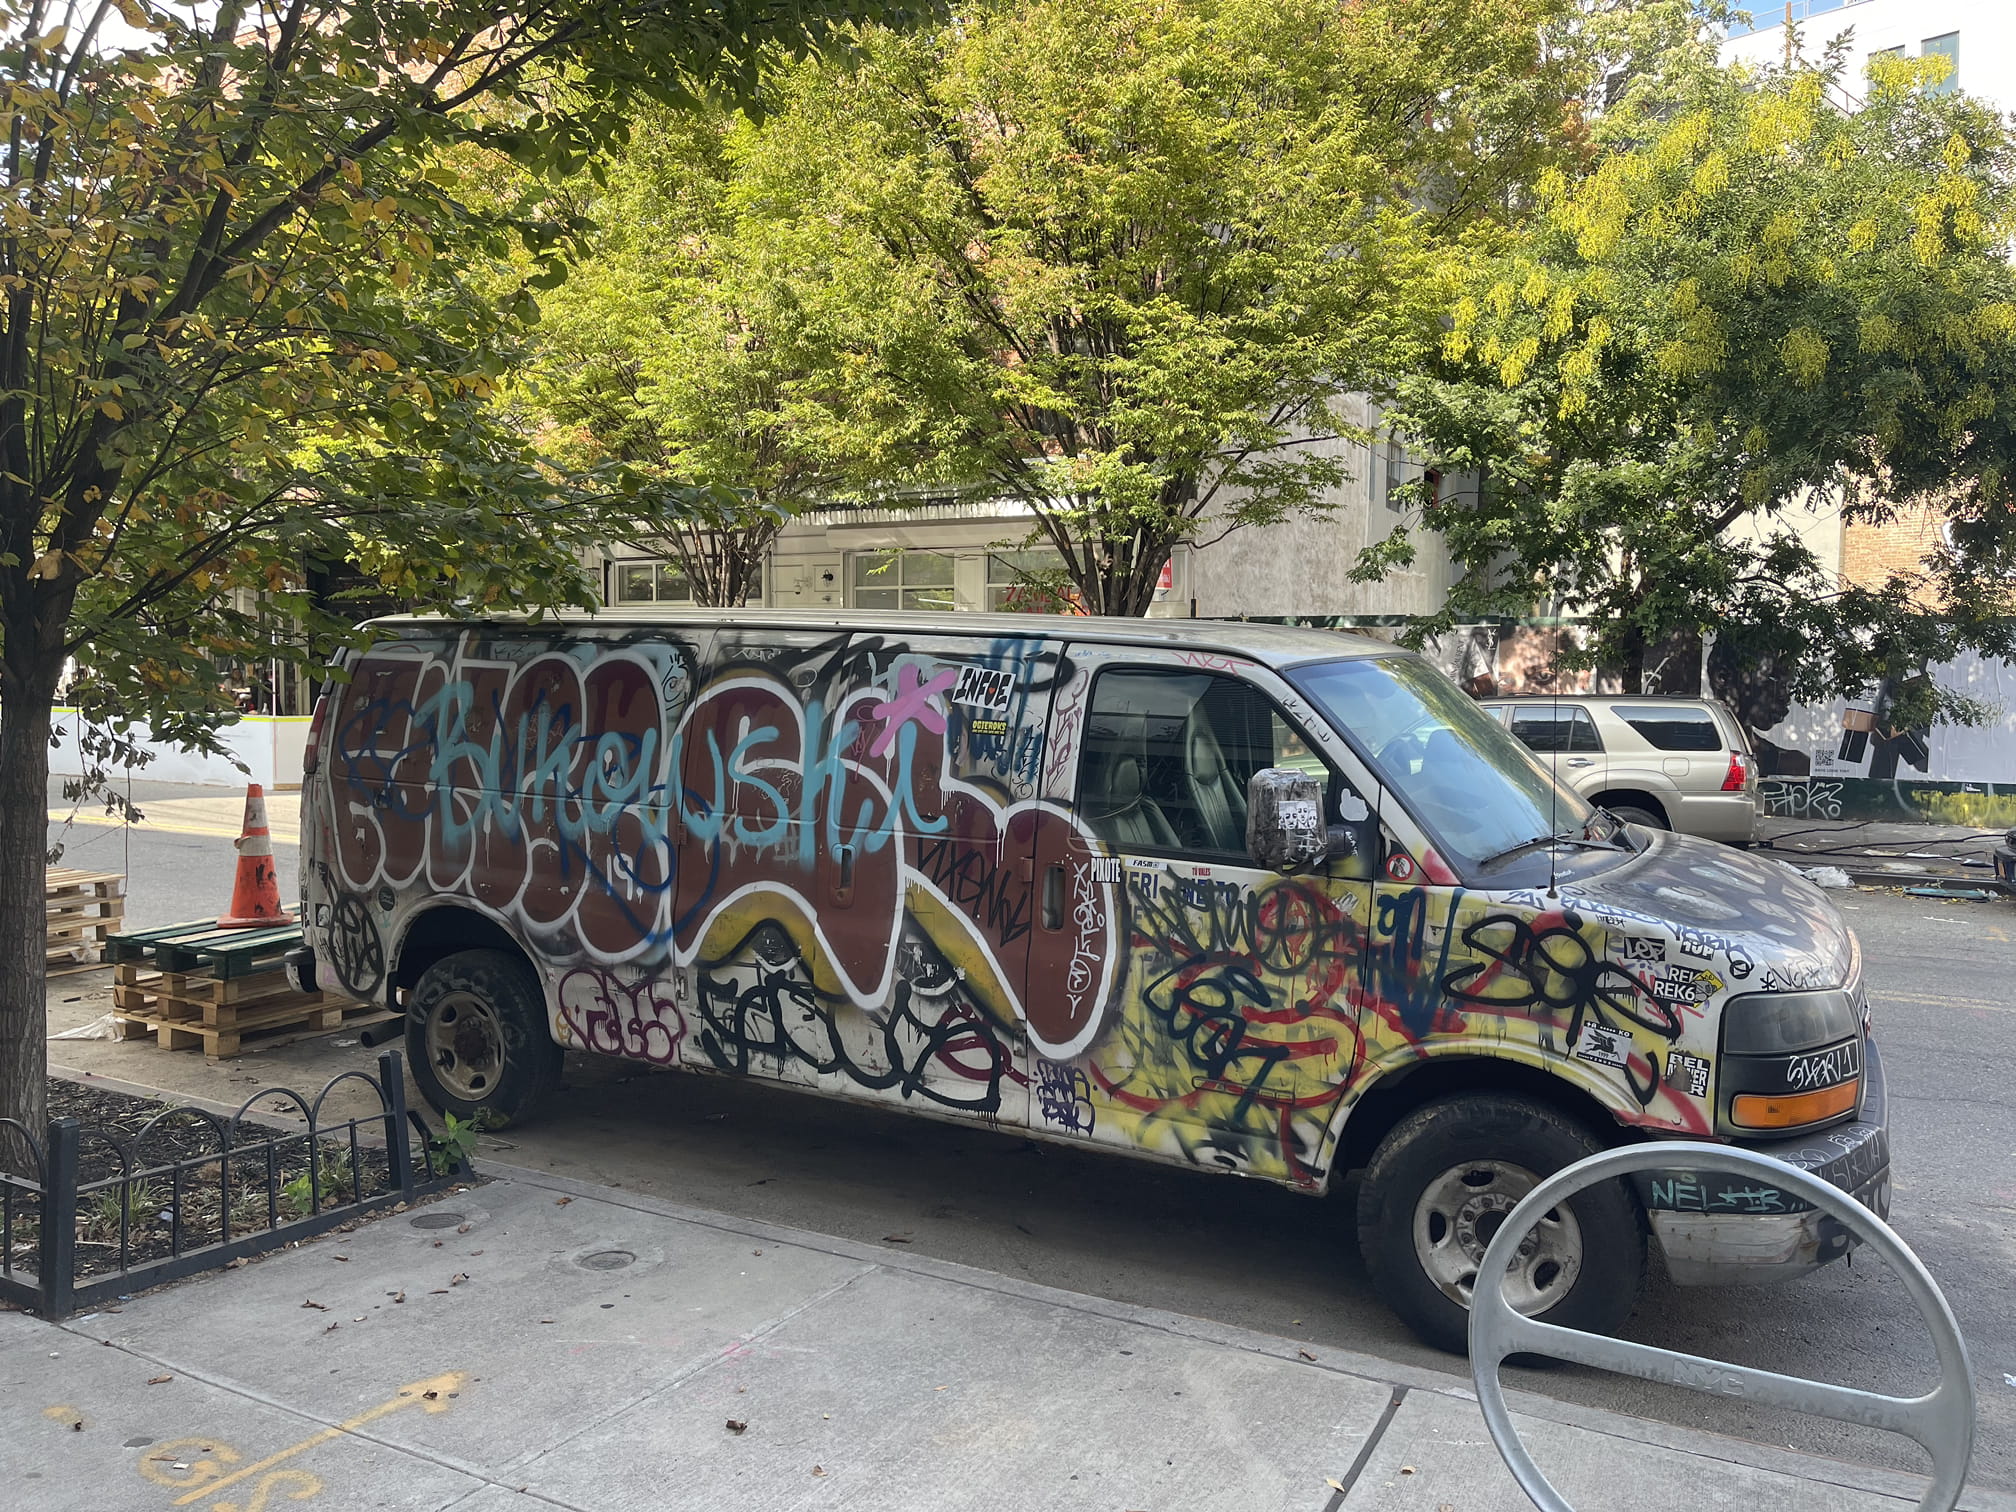 Williamsburg Brooklyn van with graffiti on it